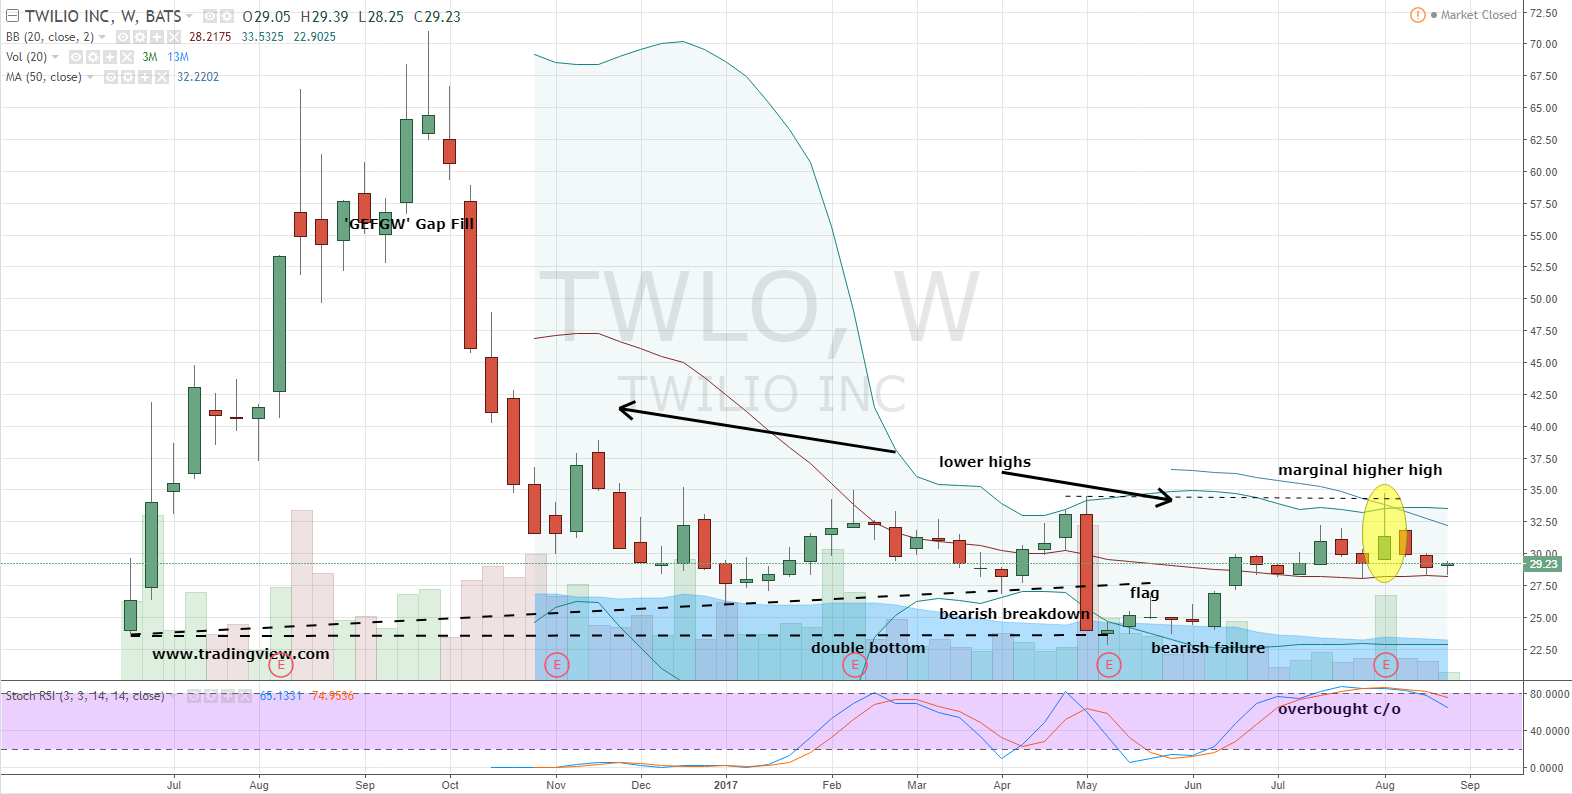 TWLO Stock: Sorry, Twilio Inc (TWLO) Stock Is Still a Short ...